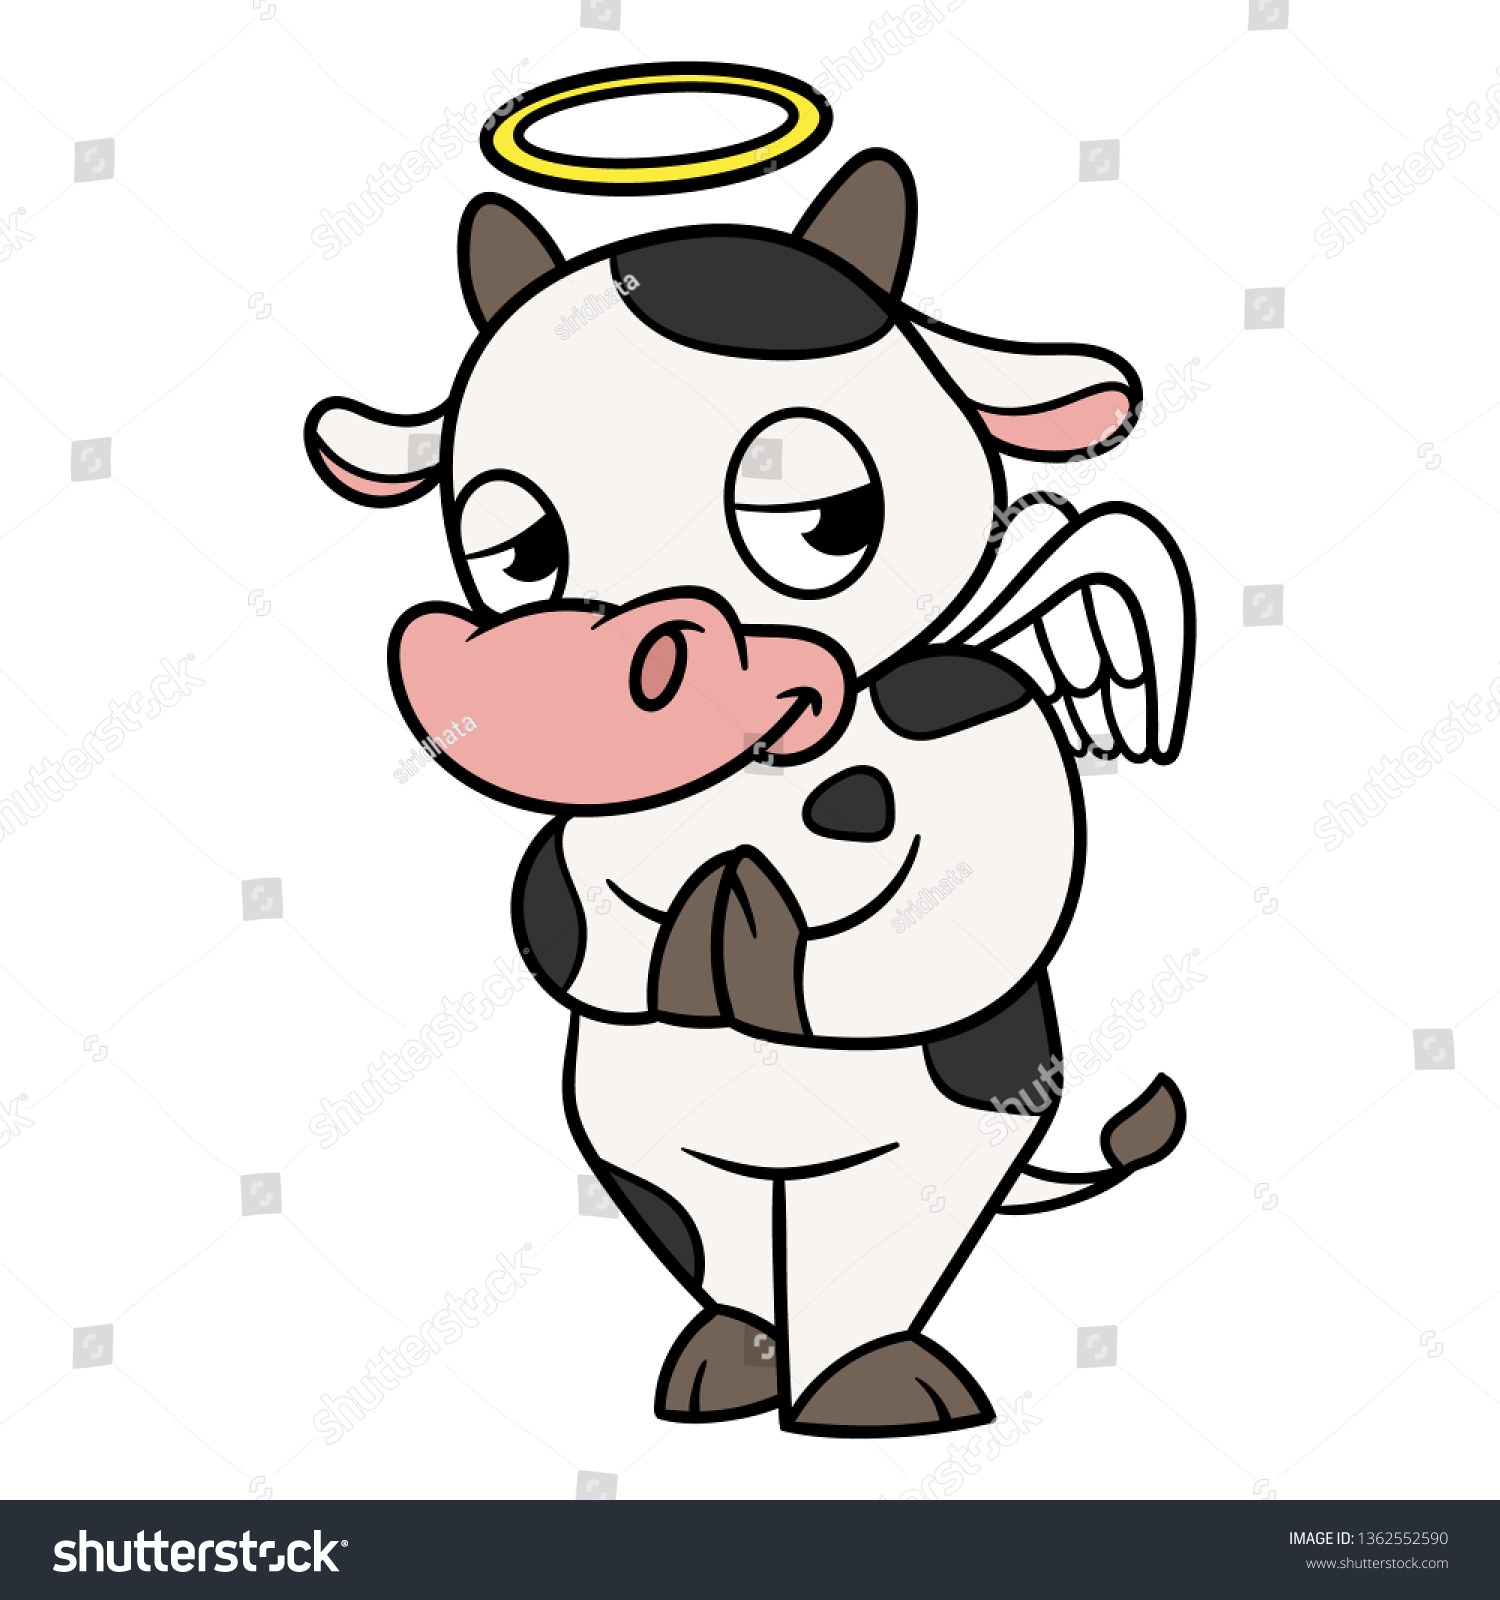 holy cow bbq pico